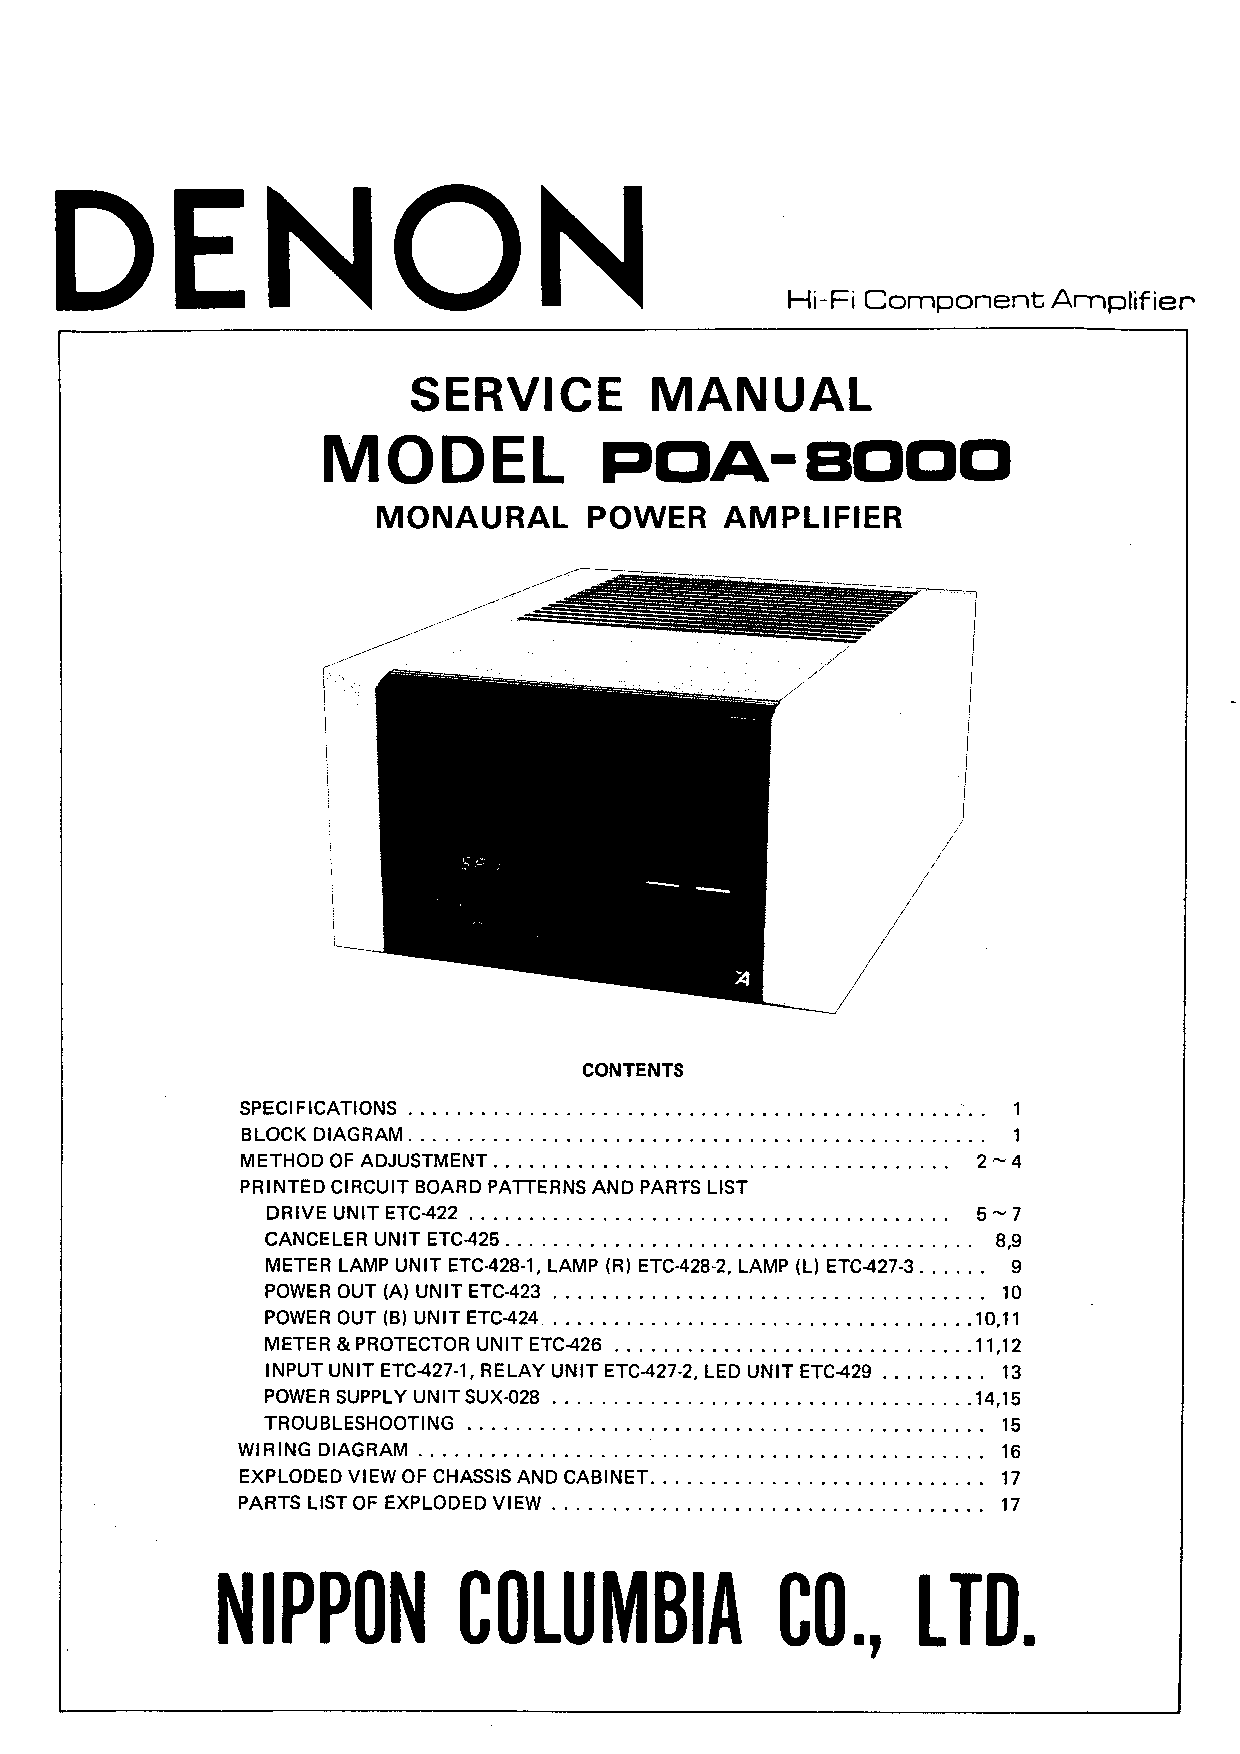 Denon POA-8000 Service Manual